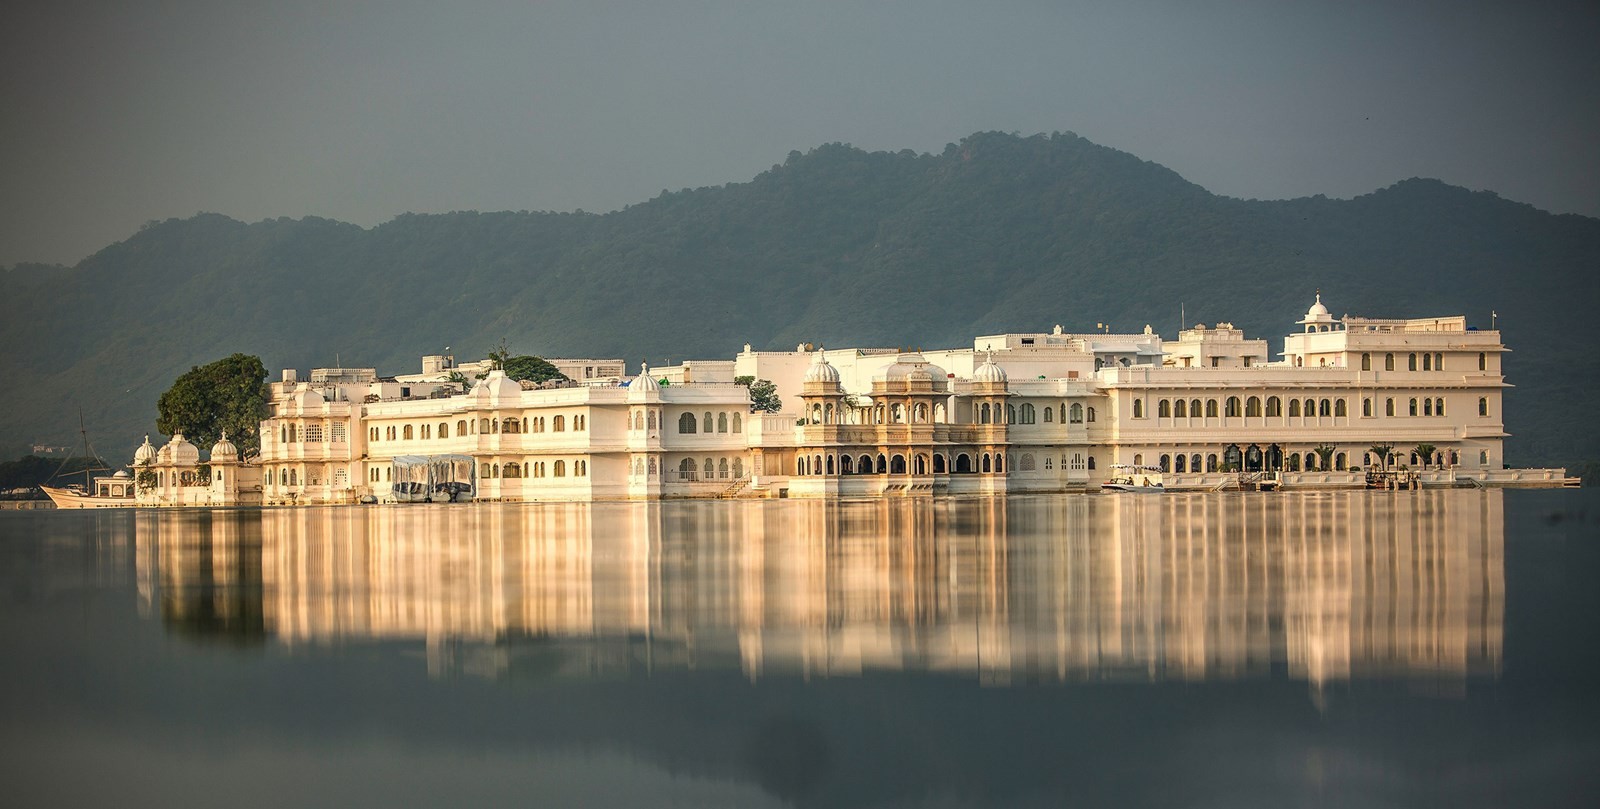 The Lake Palace - cung điện trắng nổi bật giữa lòng hồ thơ mộng 